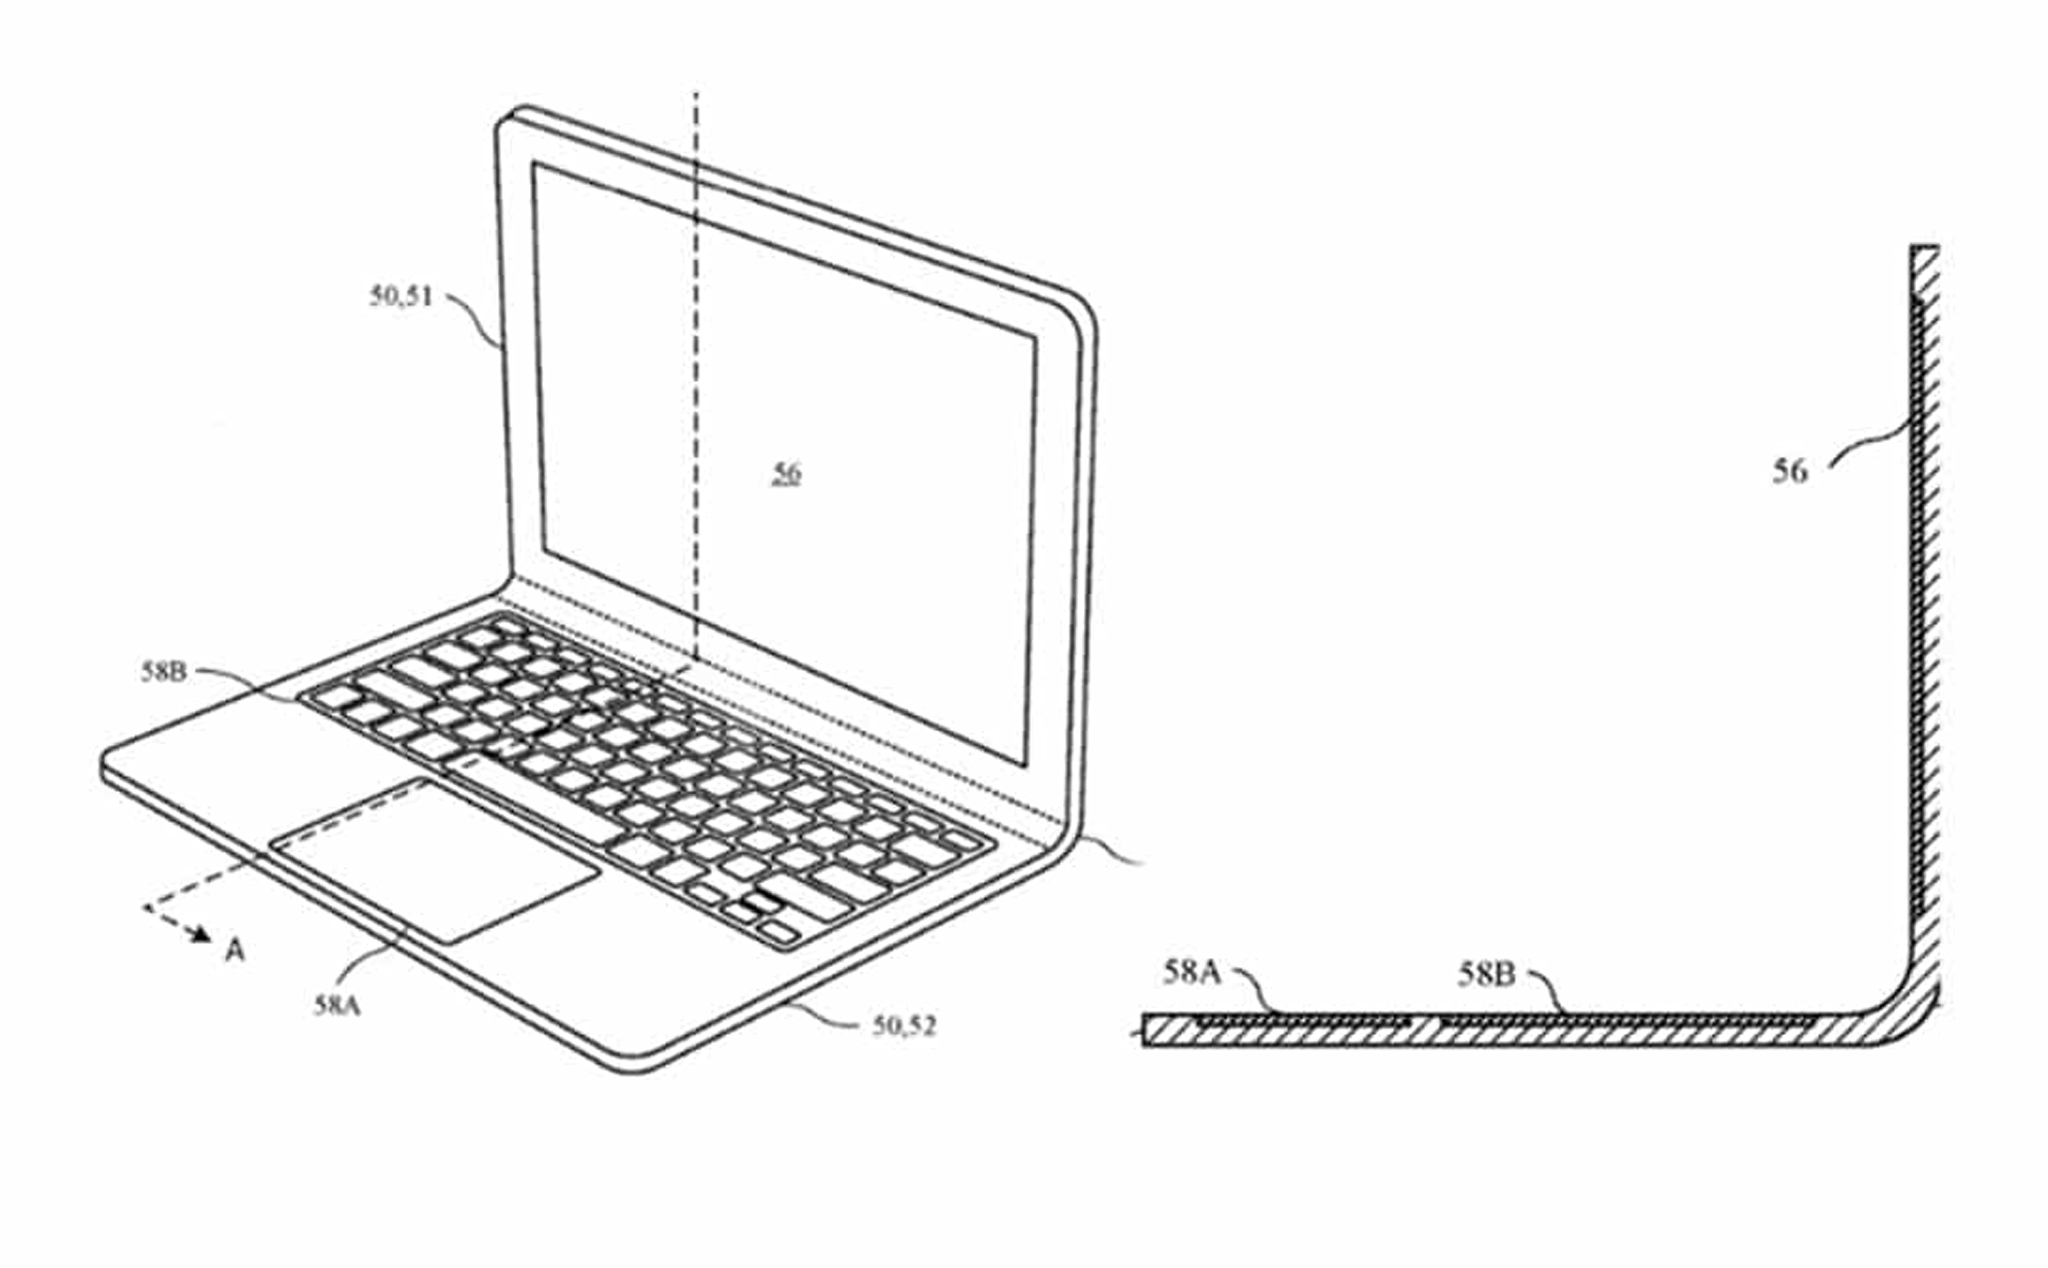 Bằng sáng chế mới của Apple: MacBook không sử dụng bản lề nữa mà sẽ uốn cong được